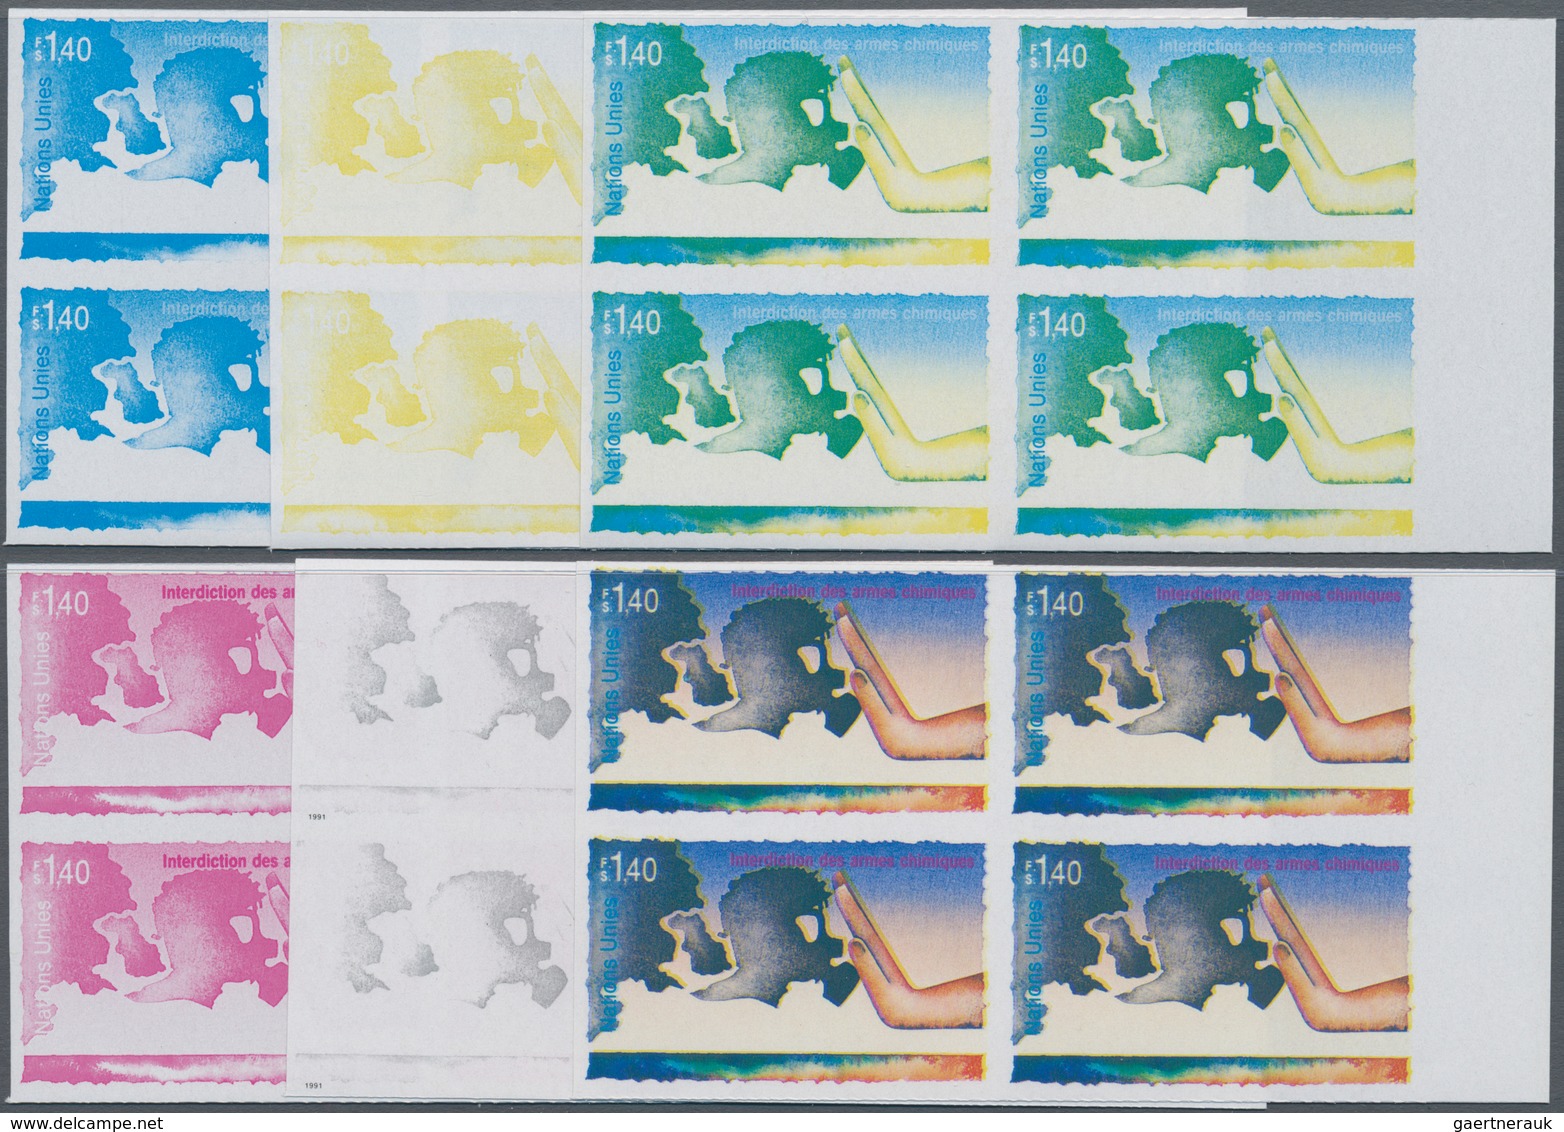 Vereinte Nationen - Genf: 1991, Verbot Von Chemischen Waffen 1.40 Fr. 'Hand Und Gasmaske' In Sechs V - Unused Stamps